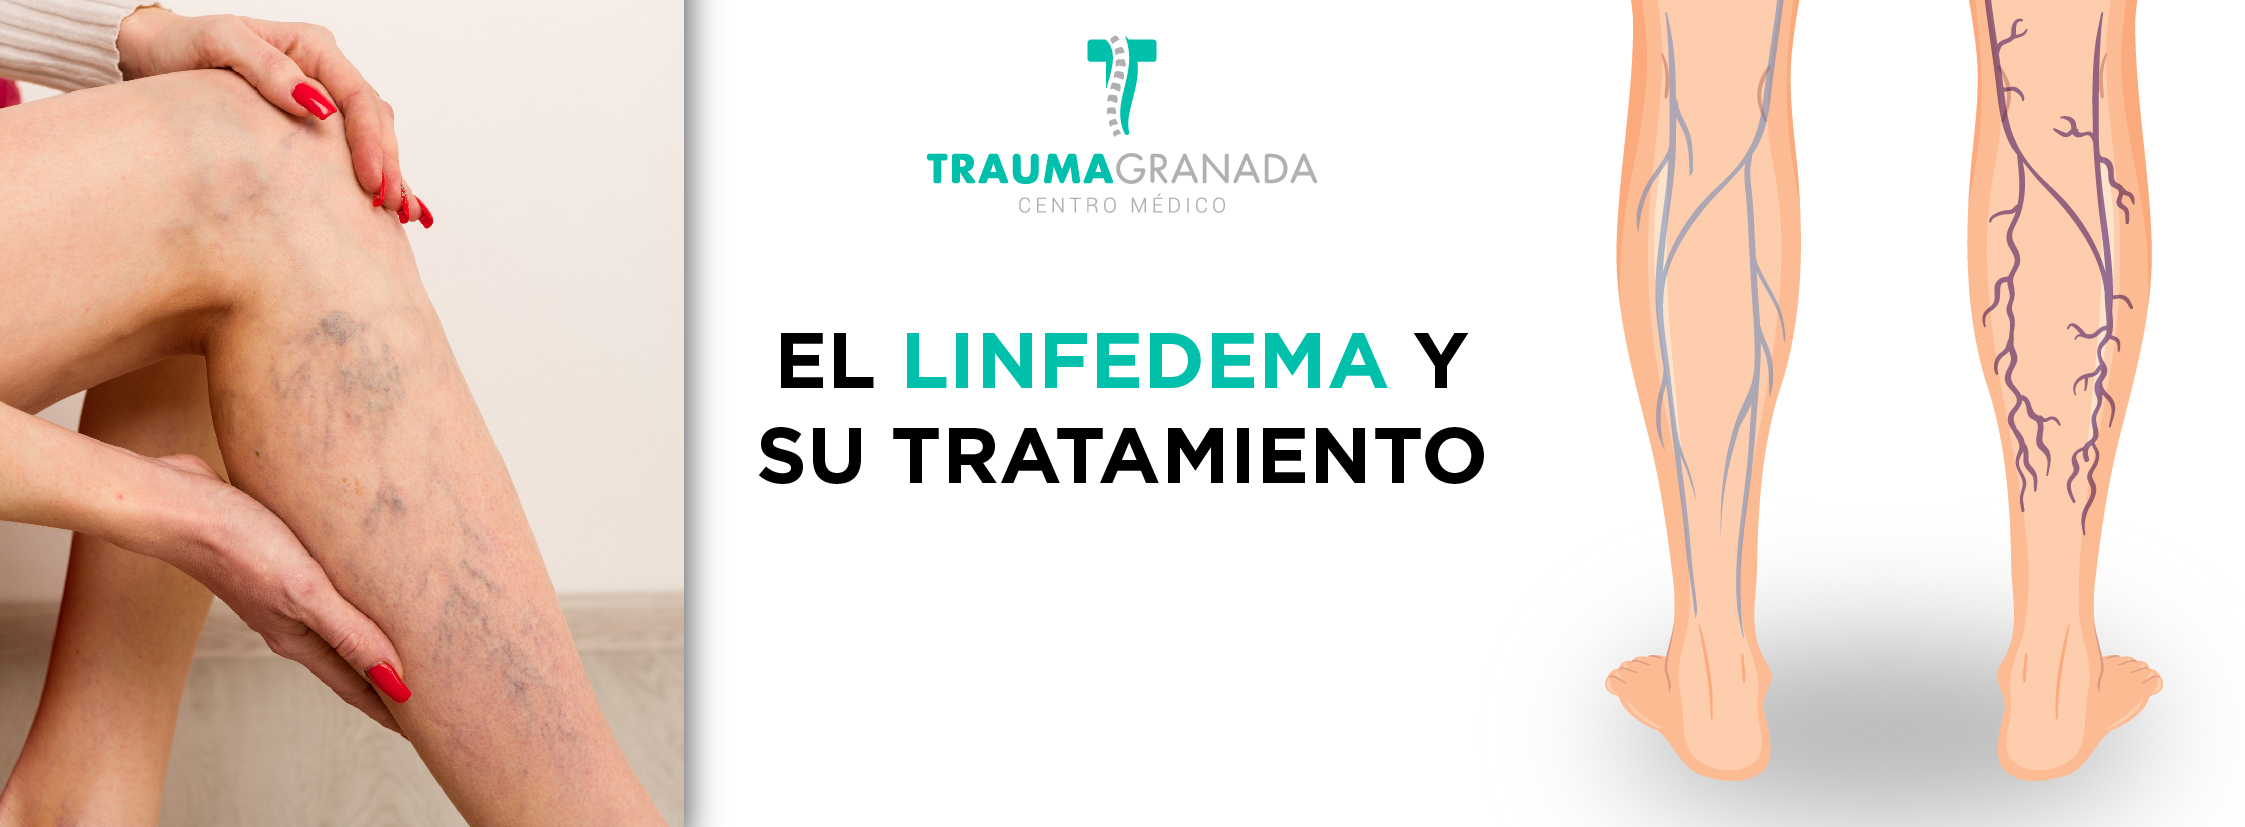 Presoterapia y Drenaje Linfático Manual, la pareja perfecta - Trauma Granada